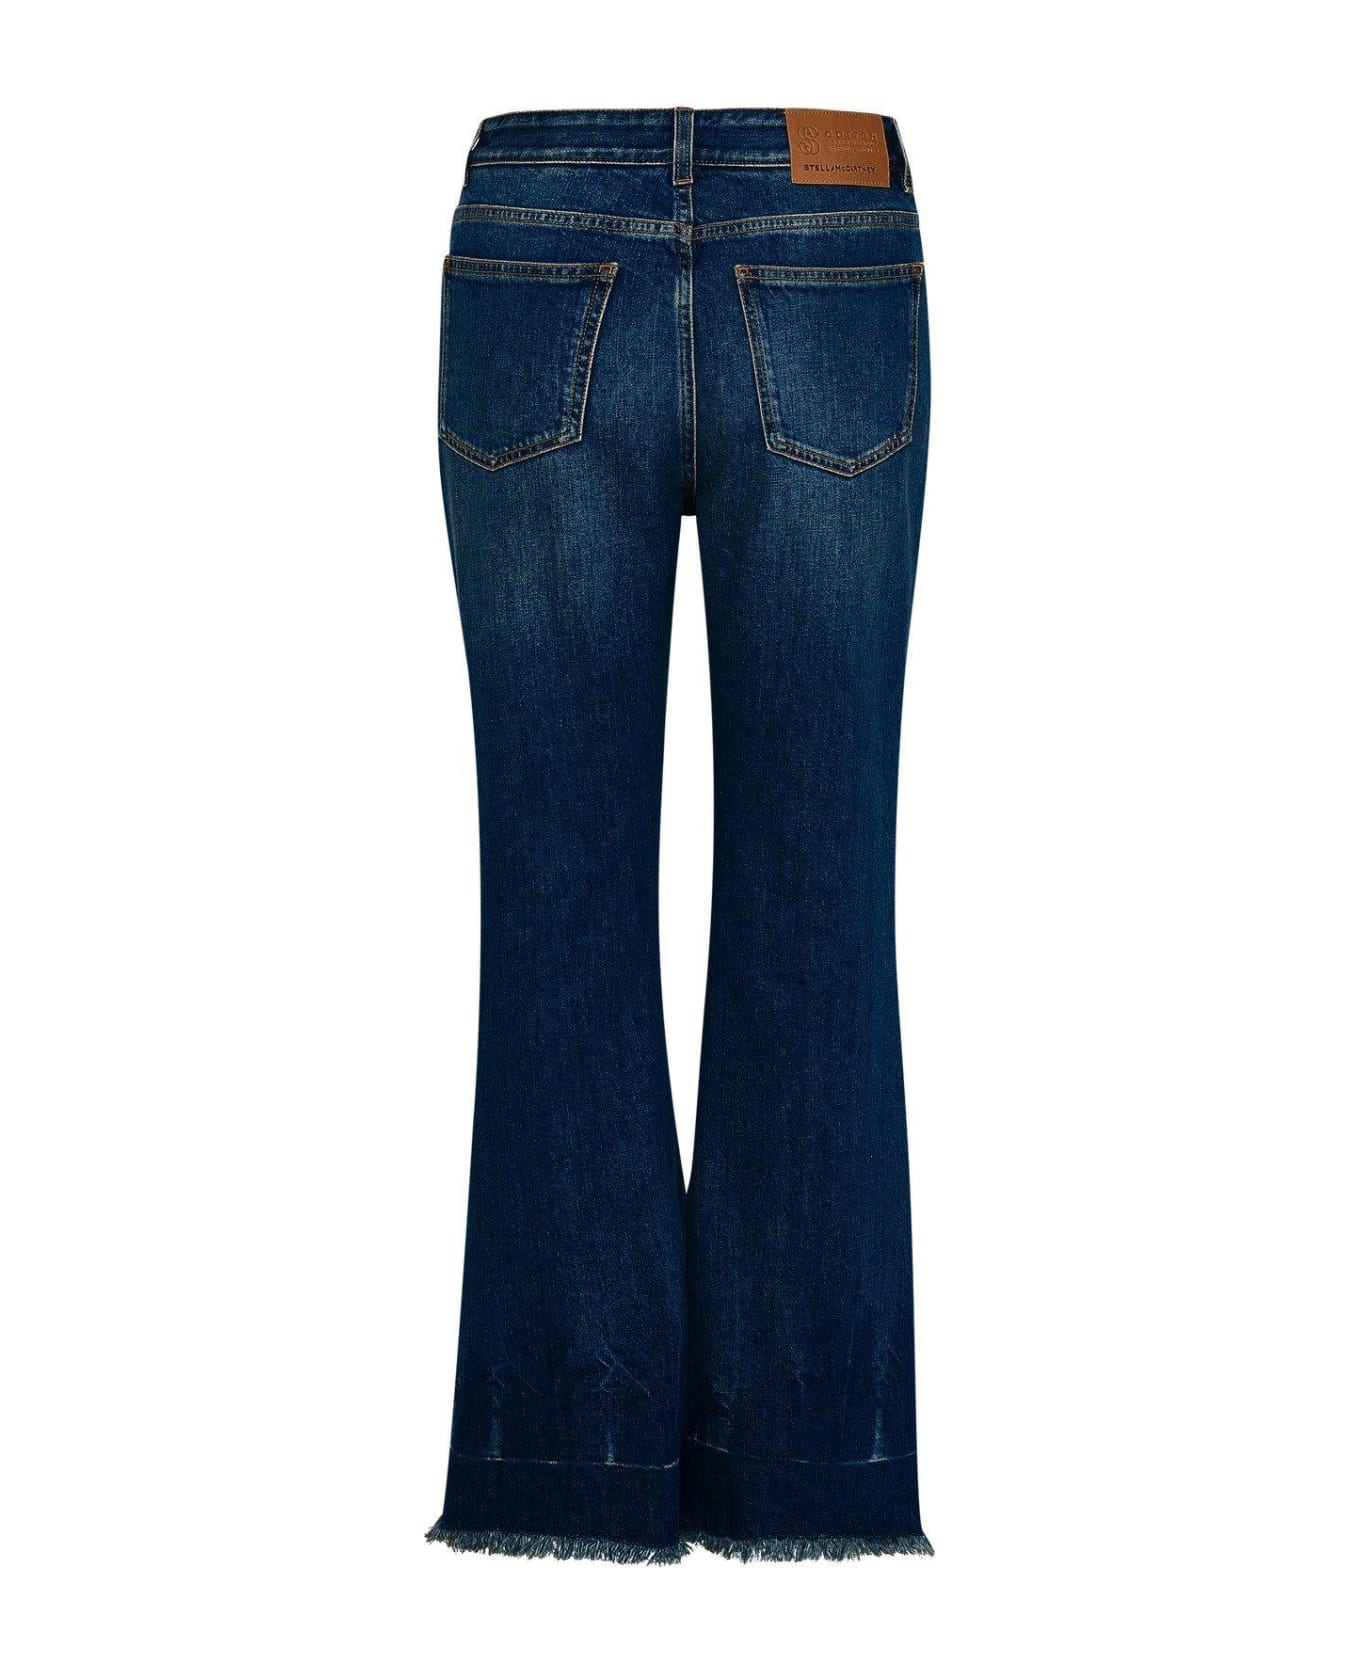 Stella McCartney Cropped Flared Jeans - Blu scuro